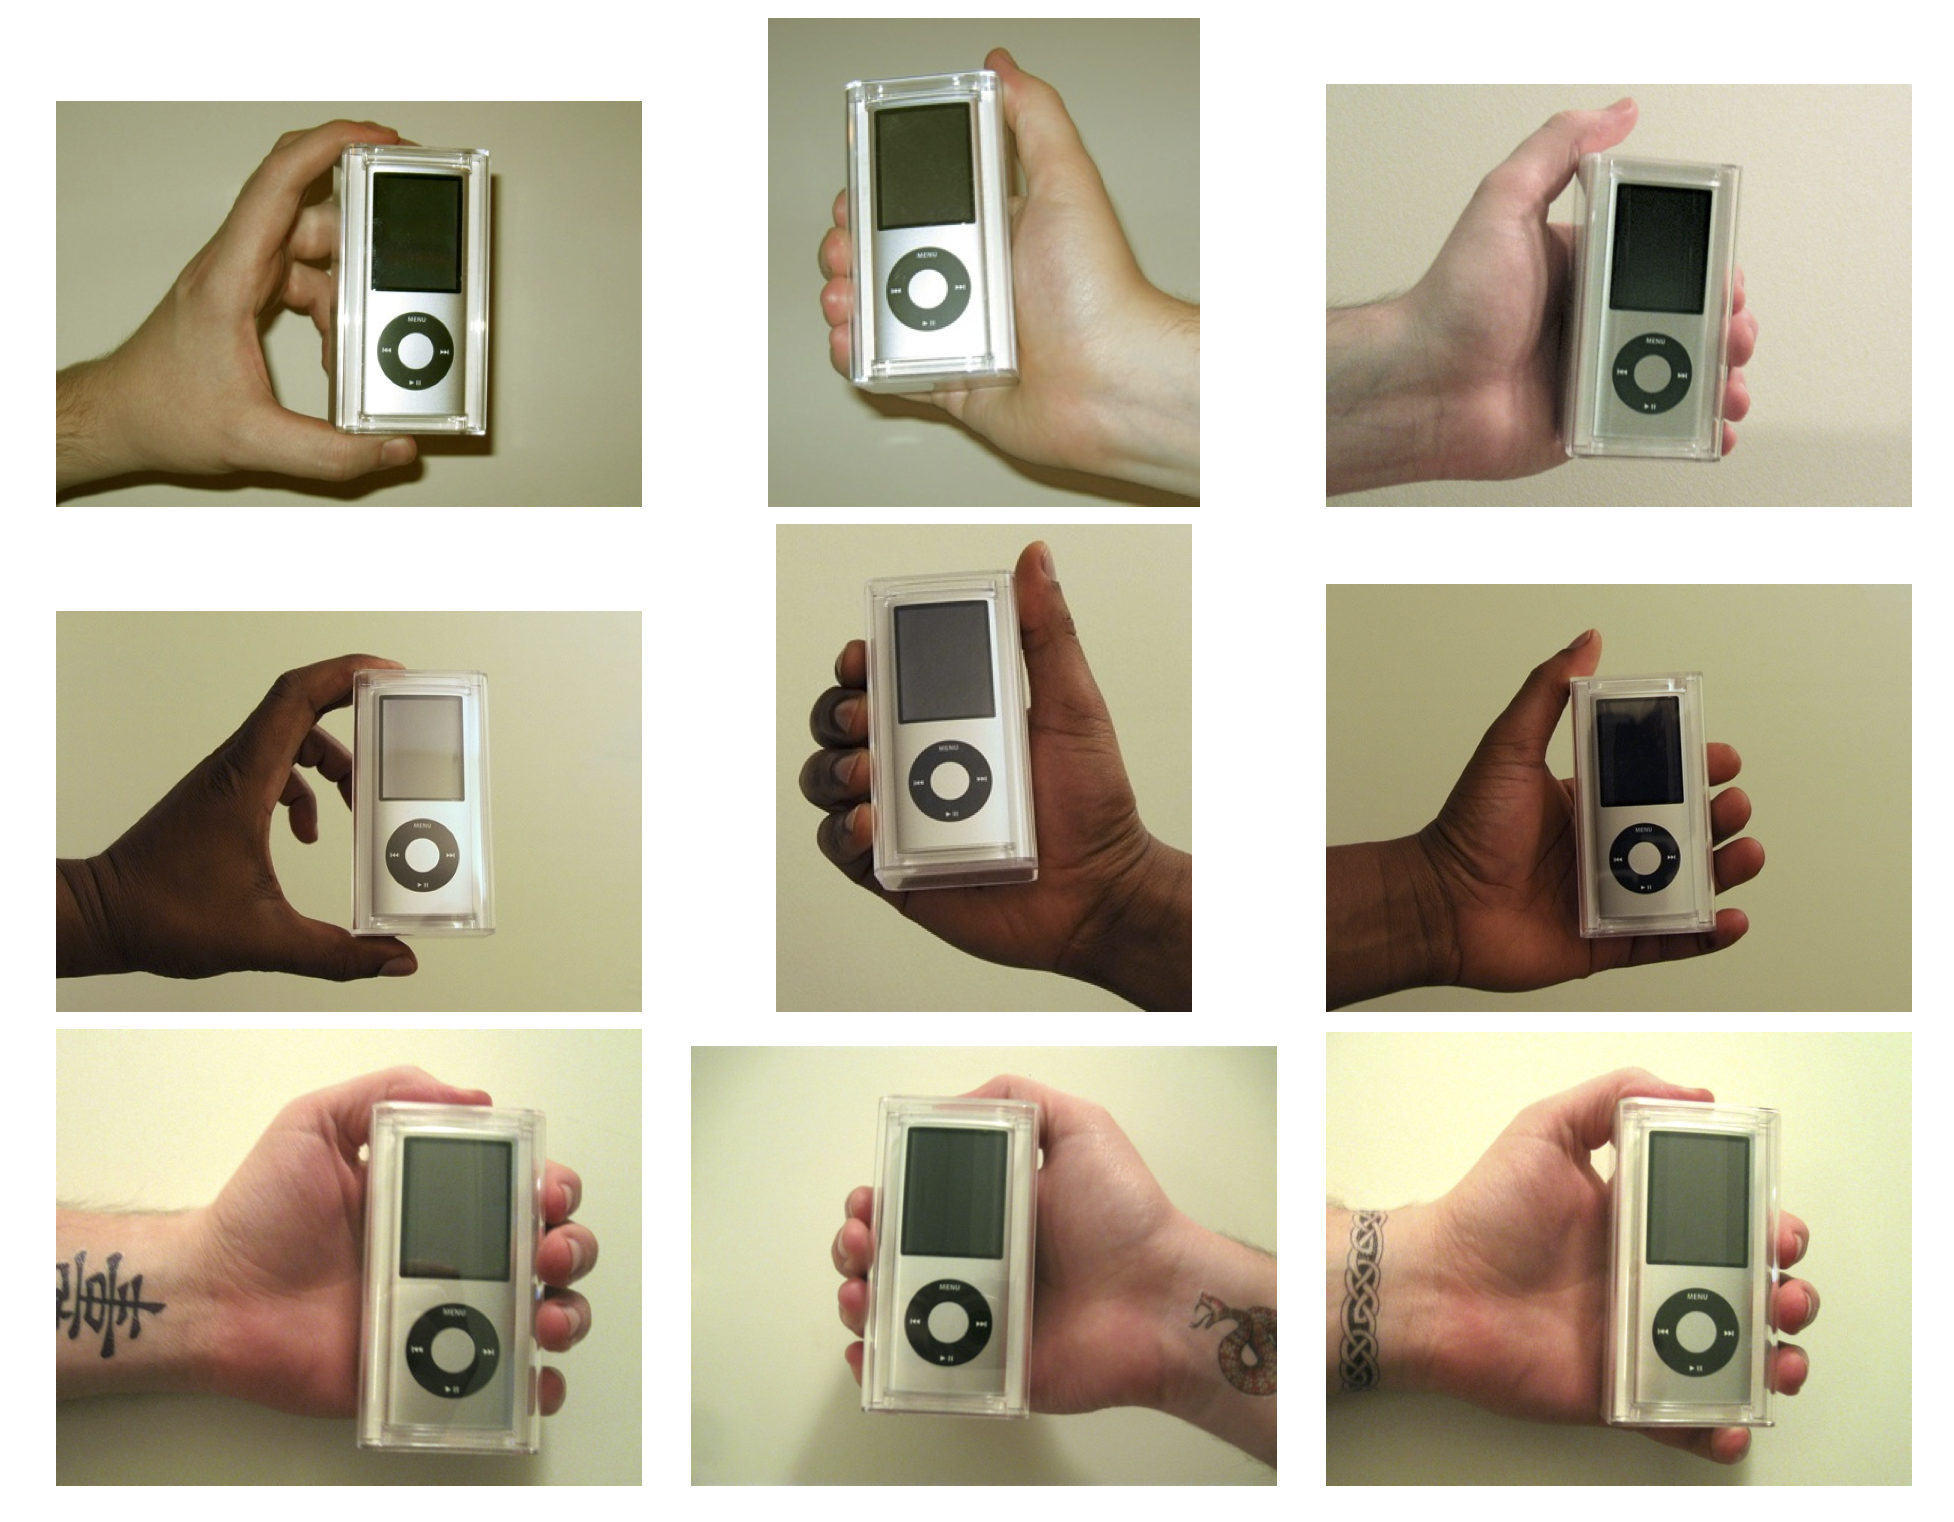 ပုံ 4.12: Doleac နှင့် Stein (2013) ၏စမ်းသပ်မှုမှာအသုံးပြုတဲ့လက်စွဲ။ iPod အွန်လိုင်းမှဈေး၌ခွဲခြားဆက်ဆံမှုကိုတိုင်းတာရန်ကွဲပြားခြားနားတဲ့ဝိသေသလက္ခဏာများနှင့်အတူရောင်းသူအားဖြင့်ရောင်းချခဲ့သည်။